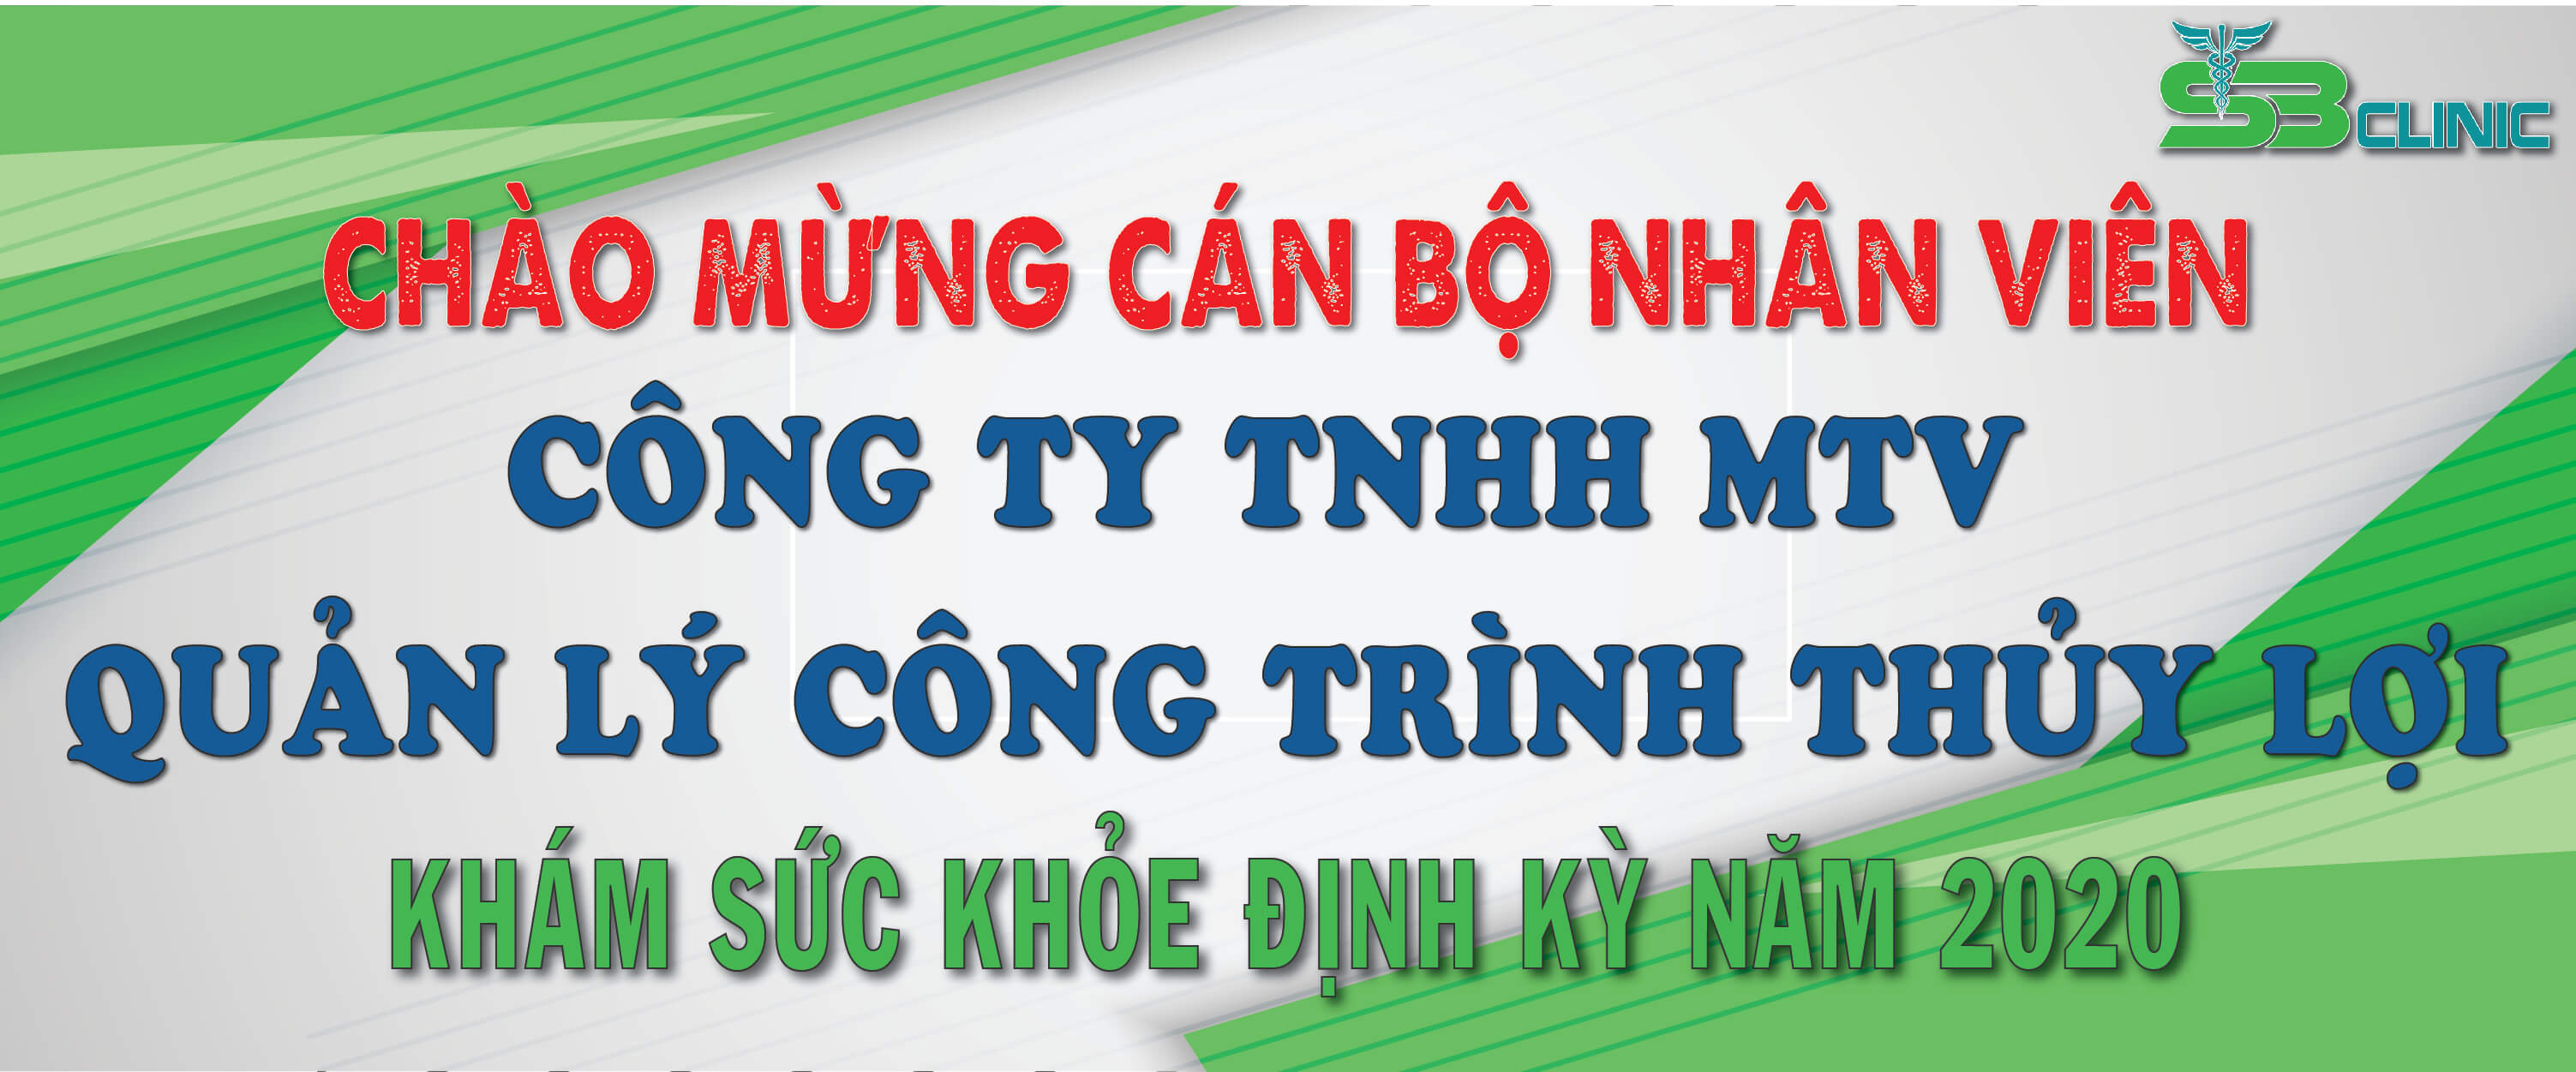 Chào đón Công ty TNHH MTV Quản lý Công trình Thủy lợi khám sức khỏe định kỳ tại Sài Gòn - Ban Mê